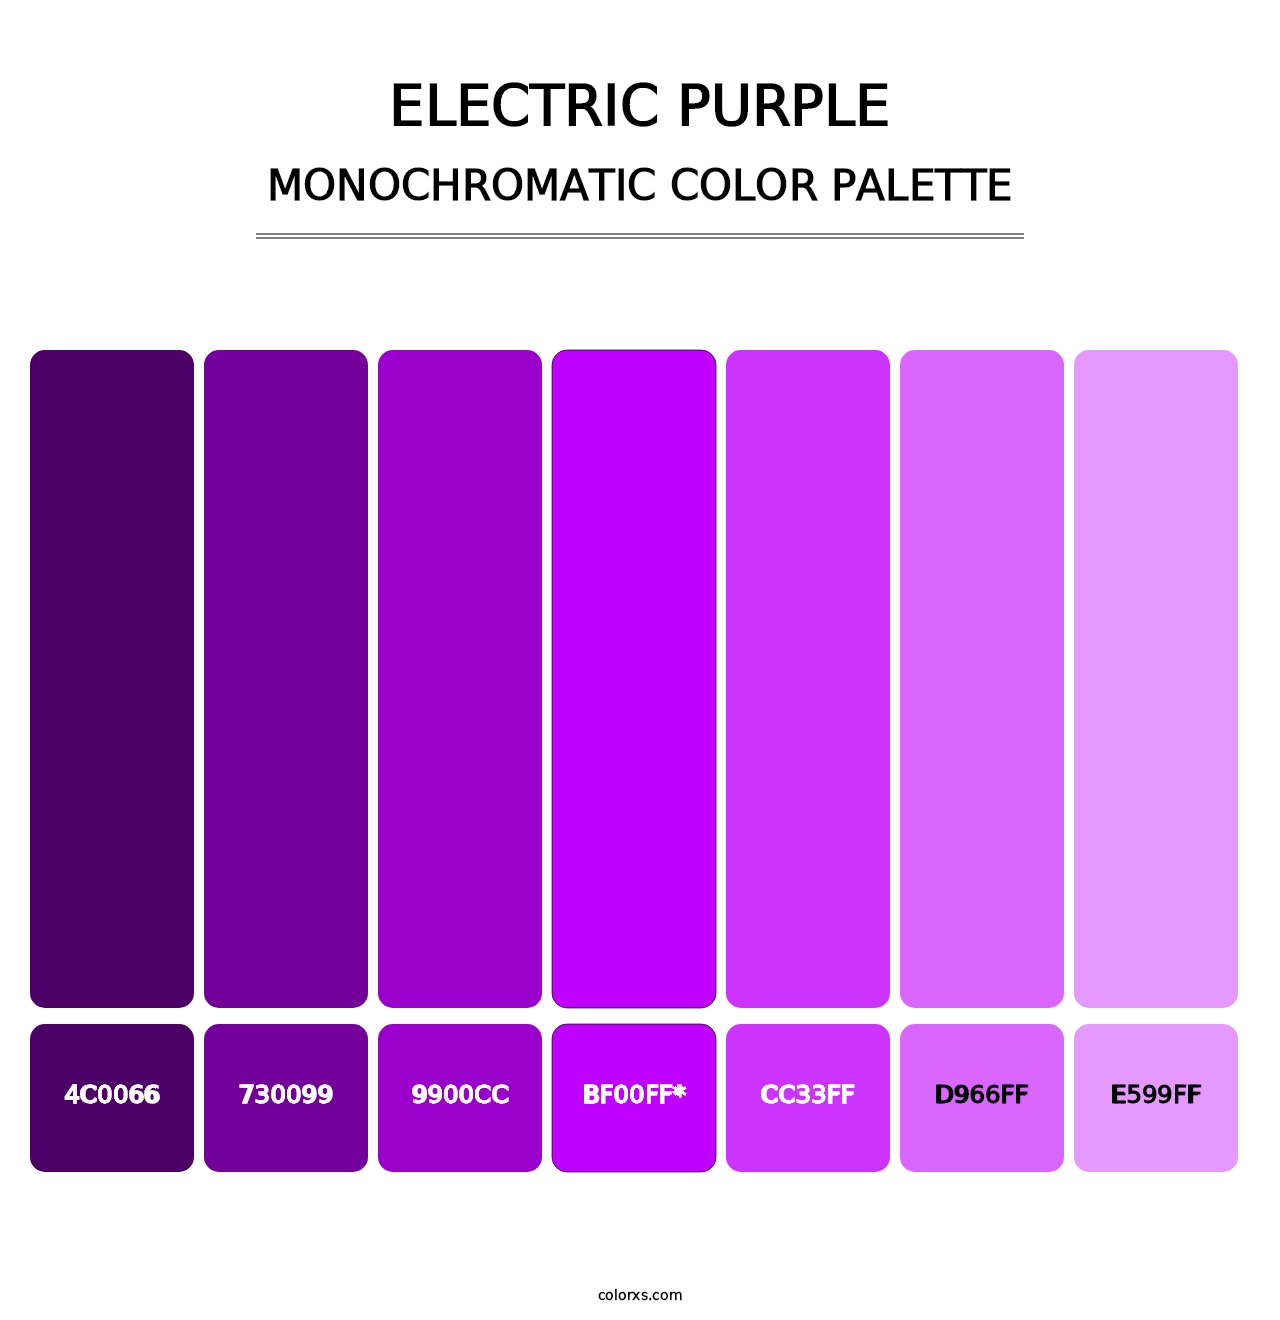 Electric Purple - Monochromatic Color Palette